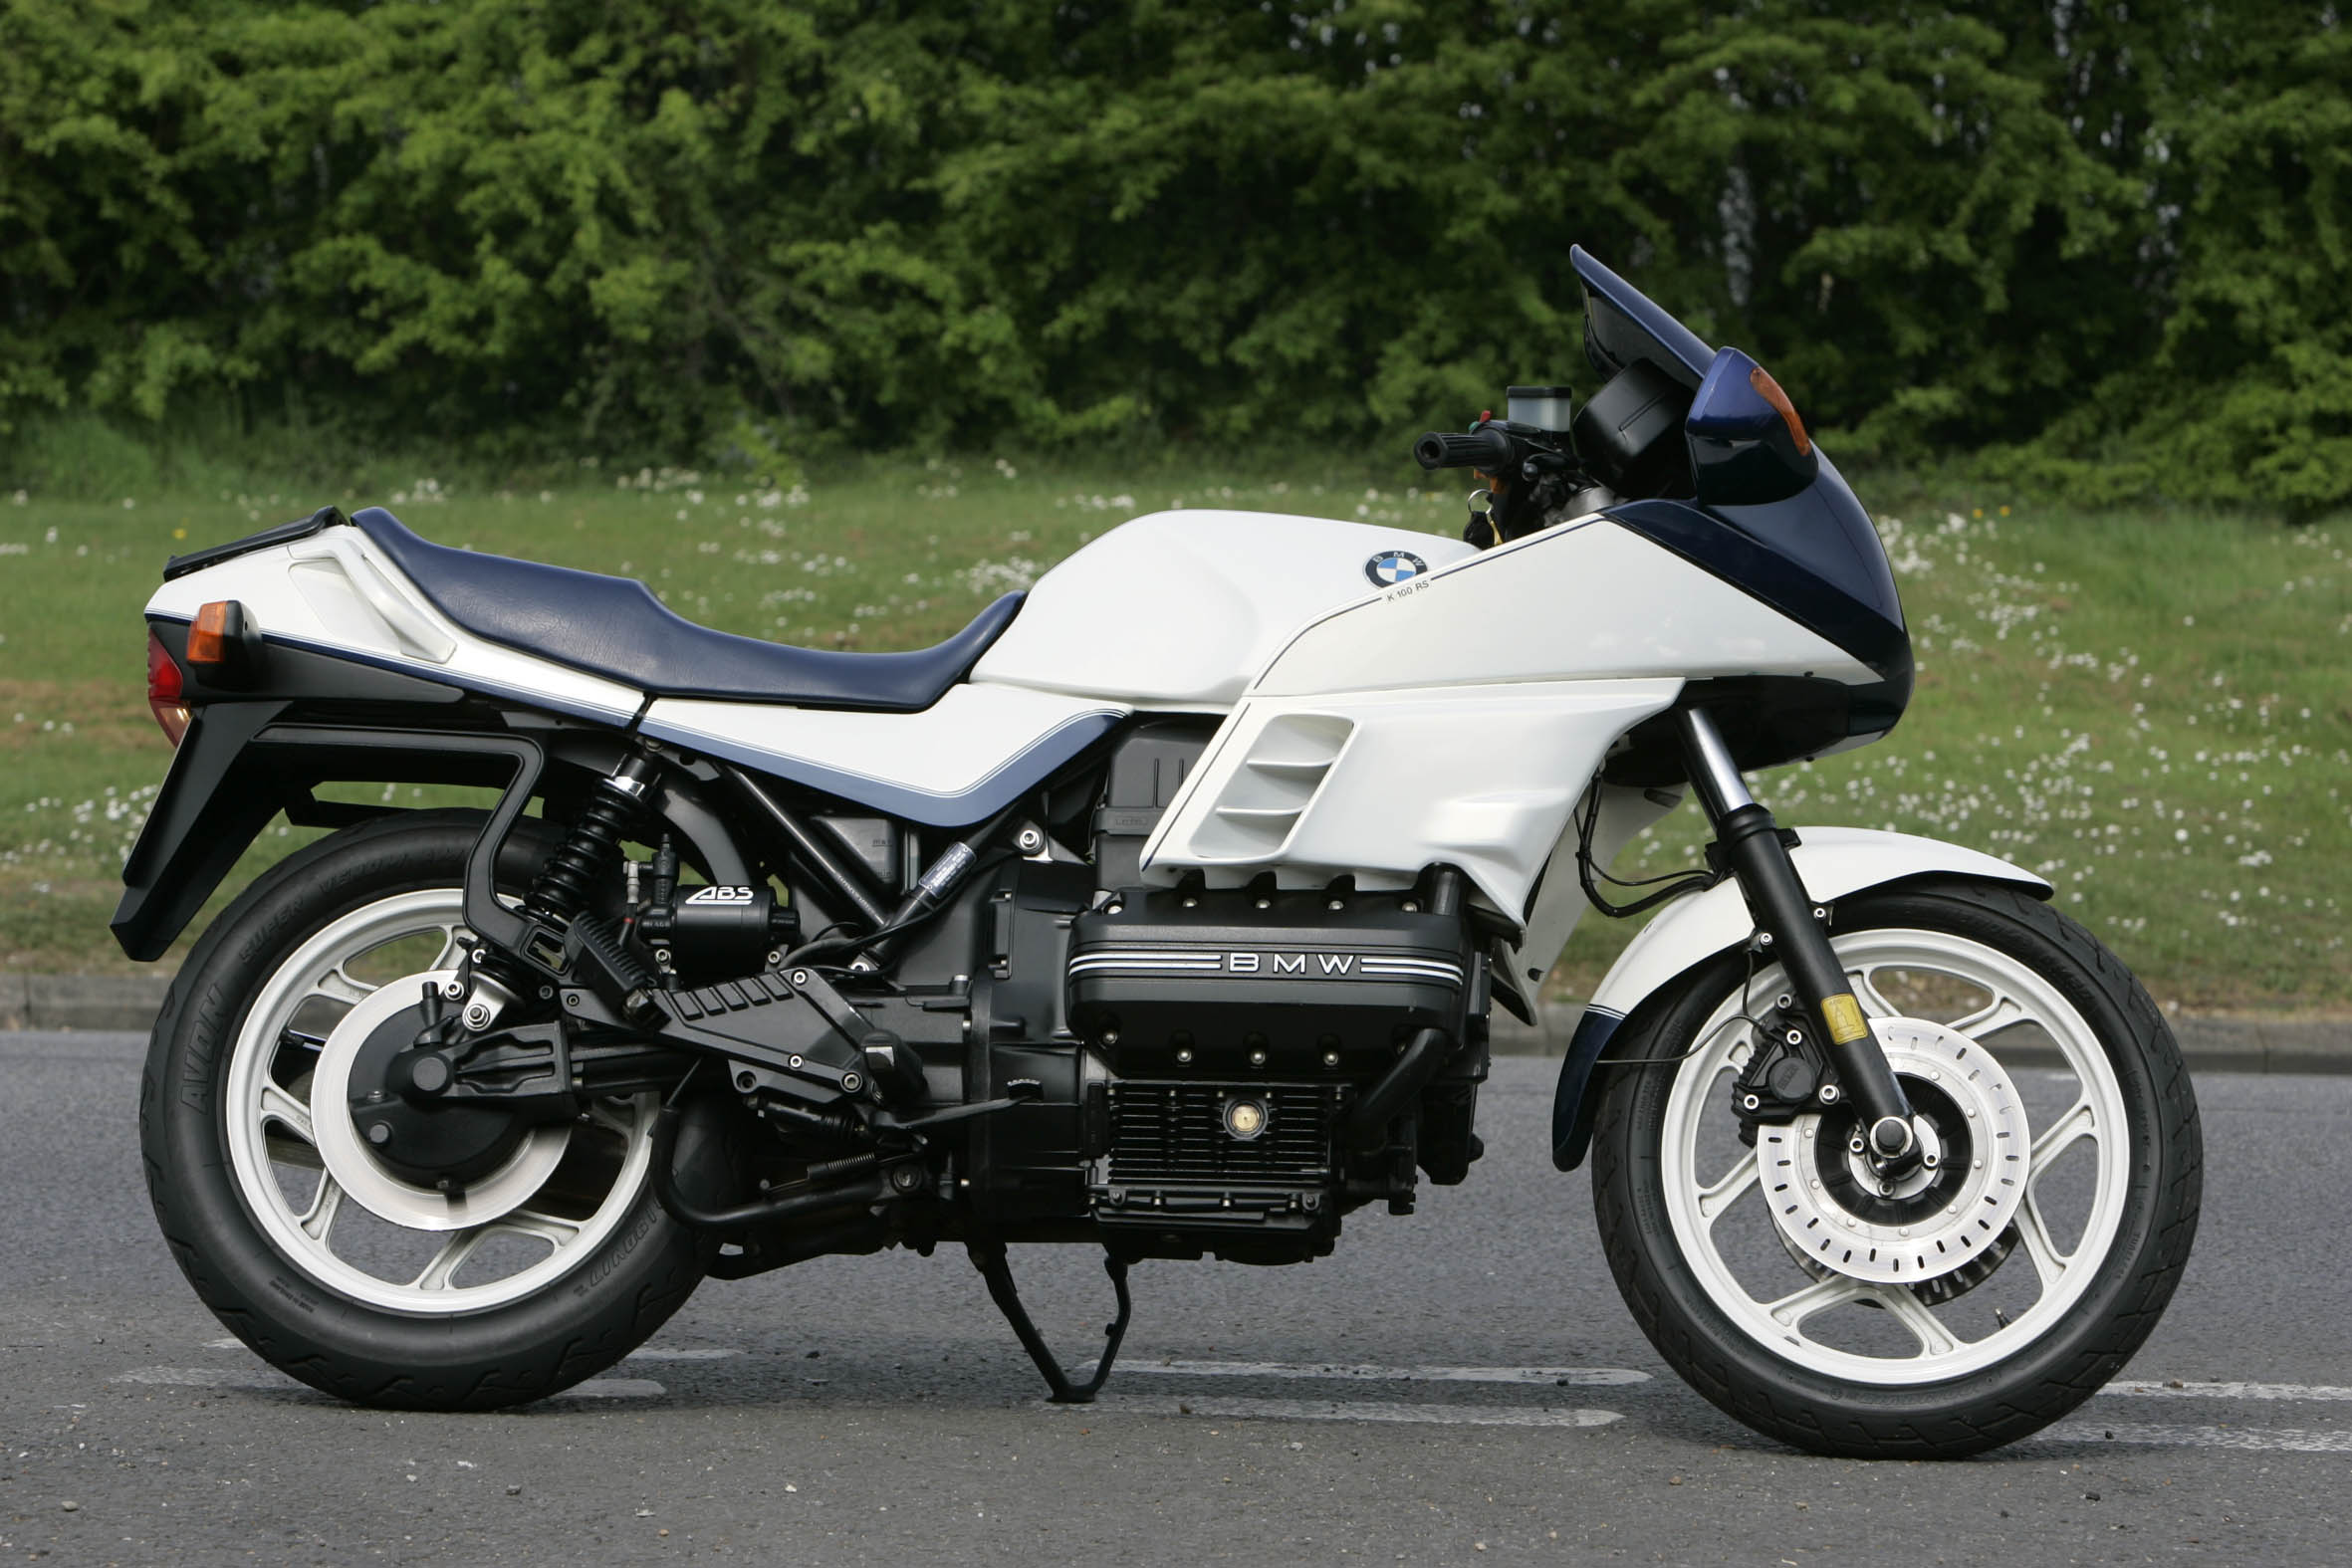 BMW K100